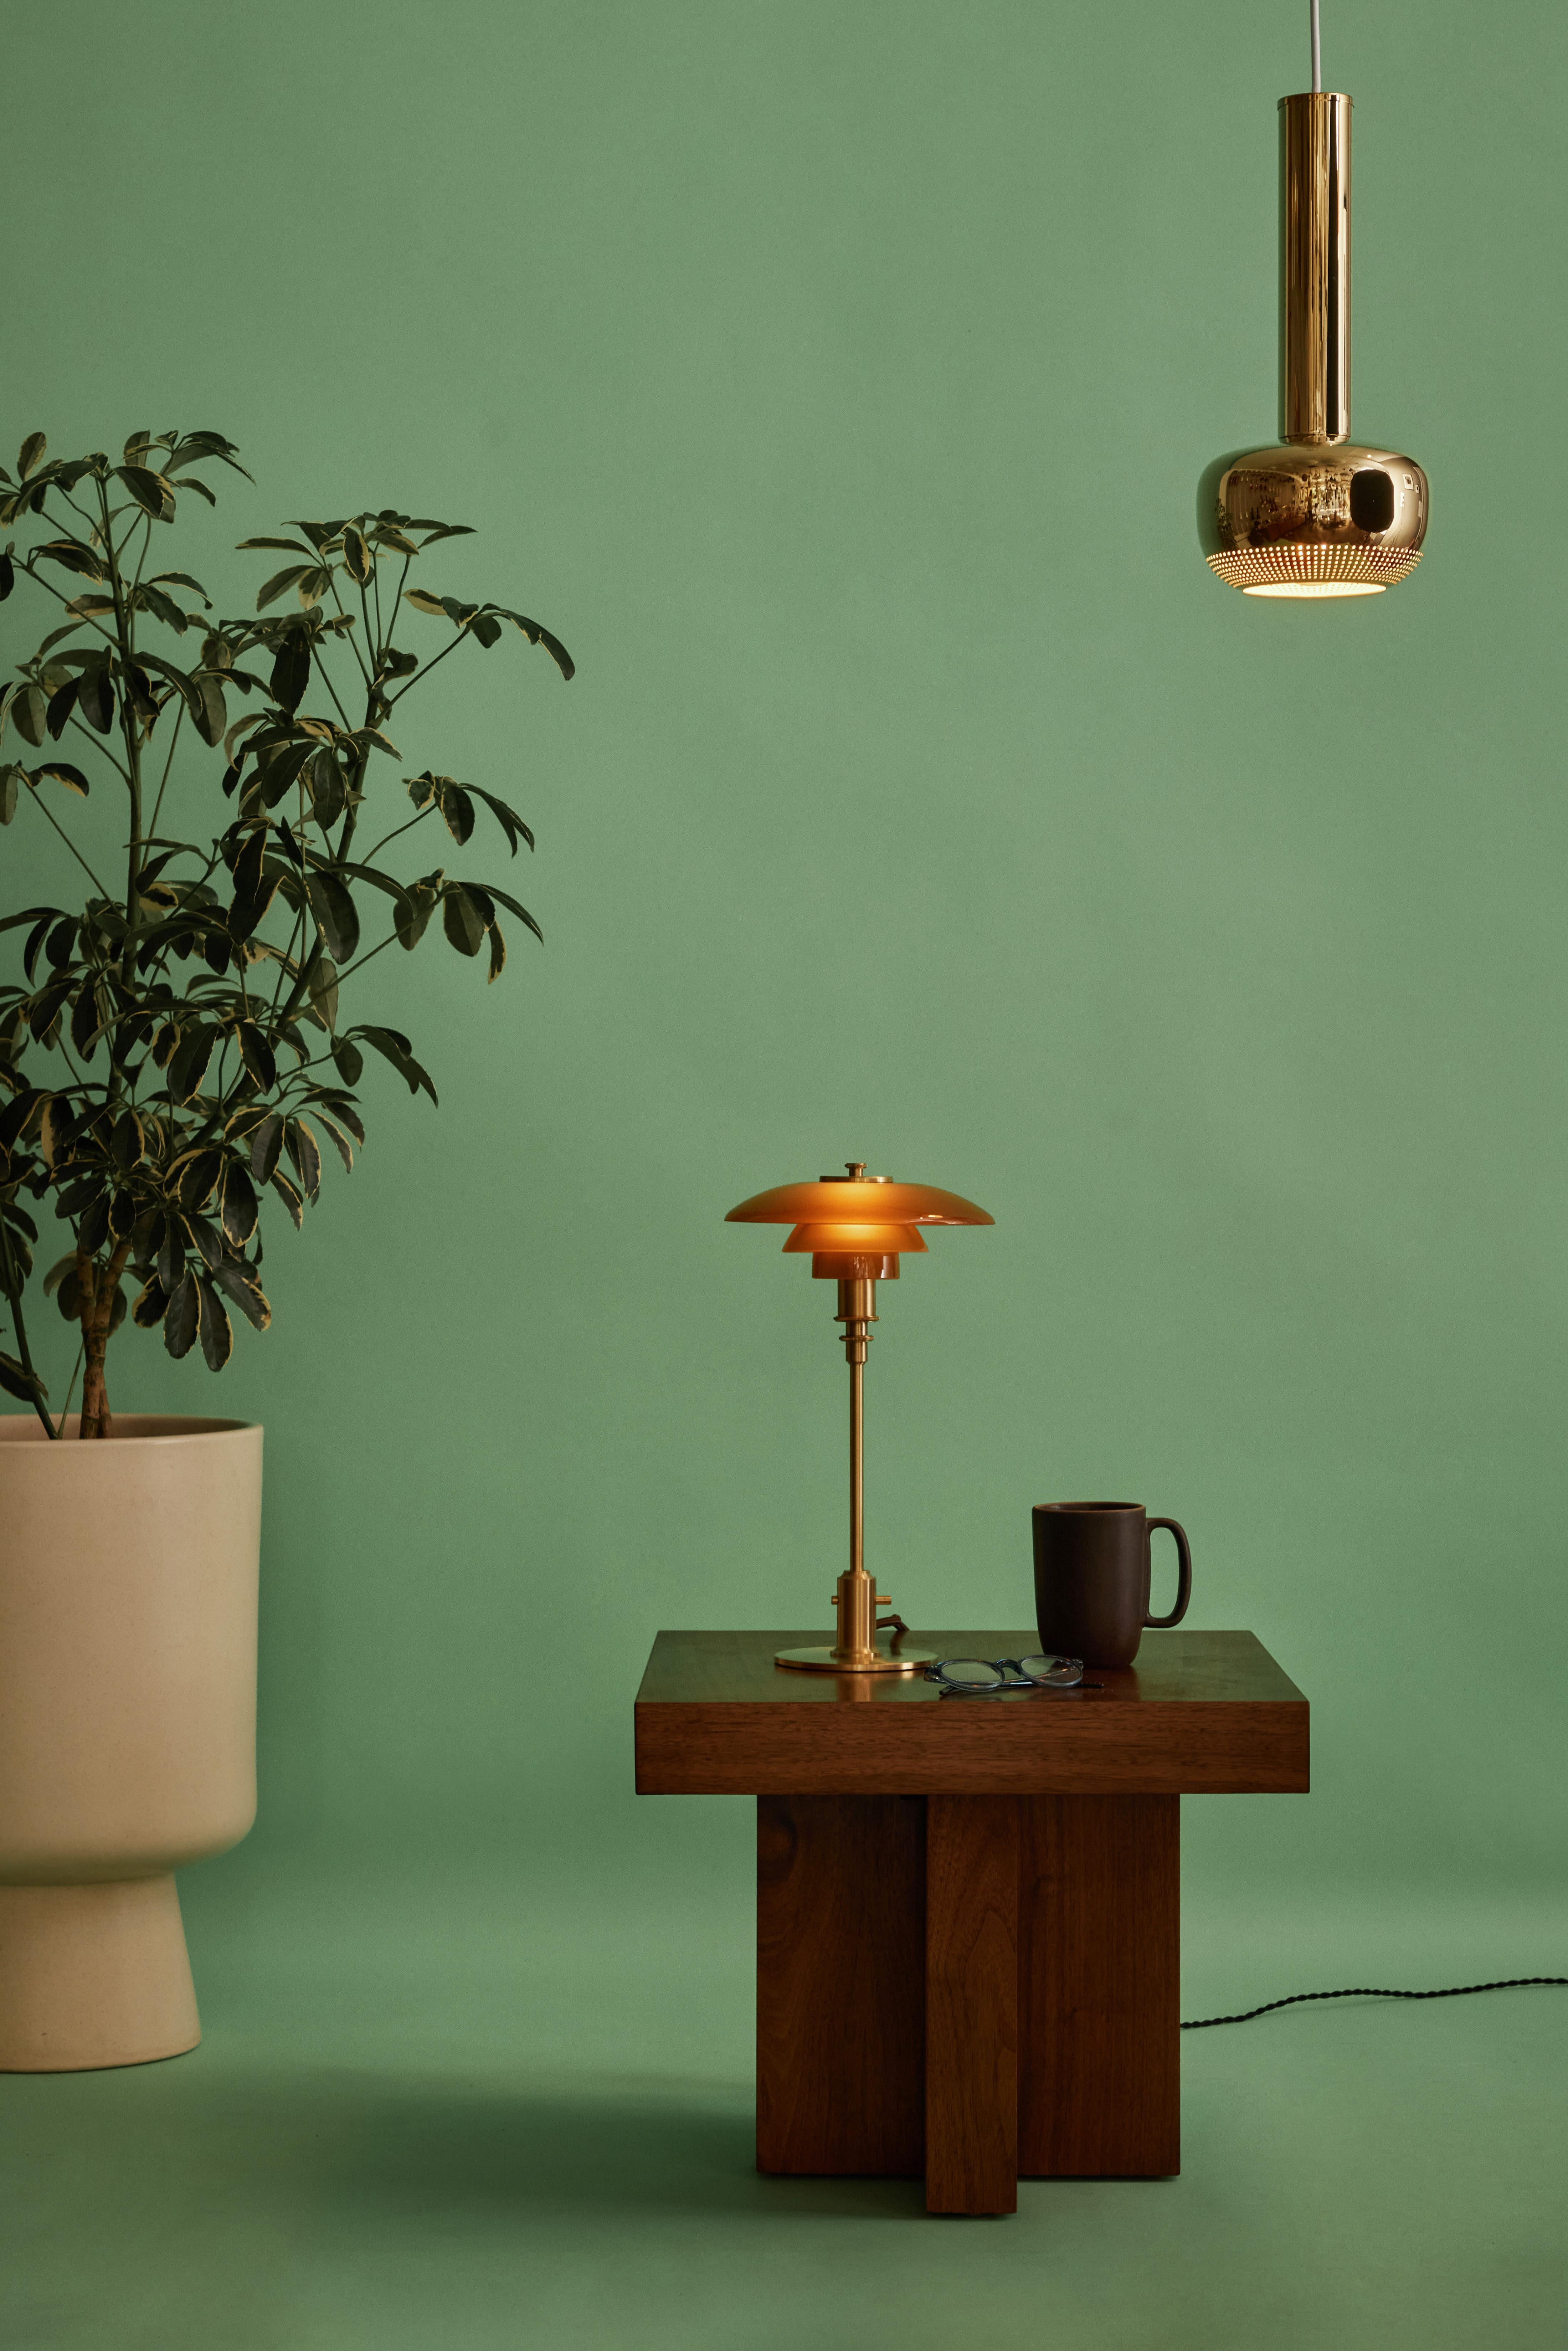 Poul Henningsen Limited Edition PH 2/1 Amber Glass Table Lamp for Louis Poulsen.

Ce design légendaire découle du brillant système à trois ombres de Henningsen datant de la fin des années 1920. Cette version 2020 en édition limitée est dotée d'un